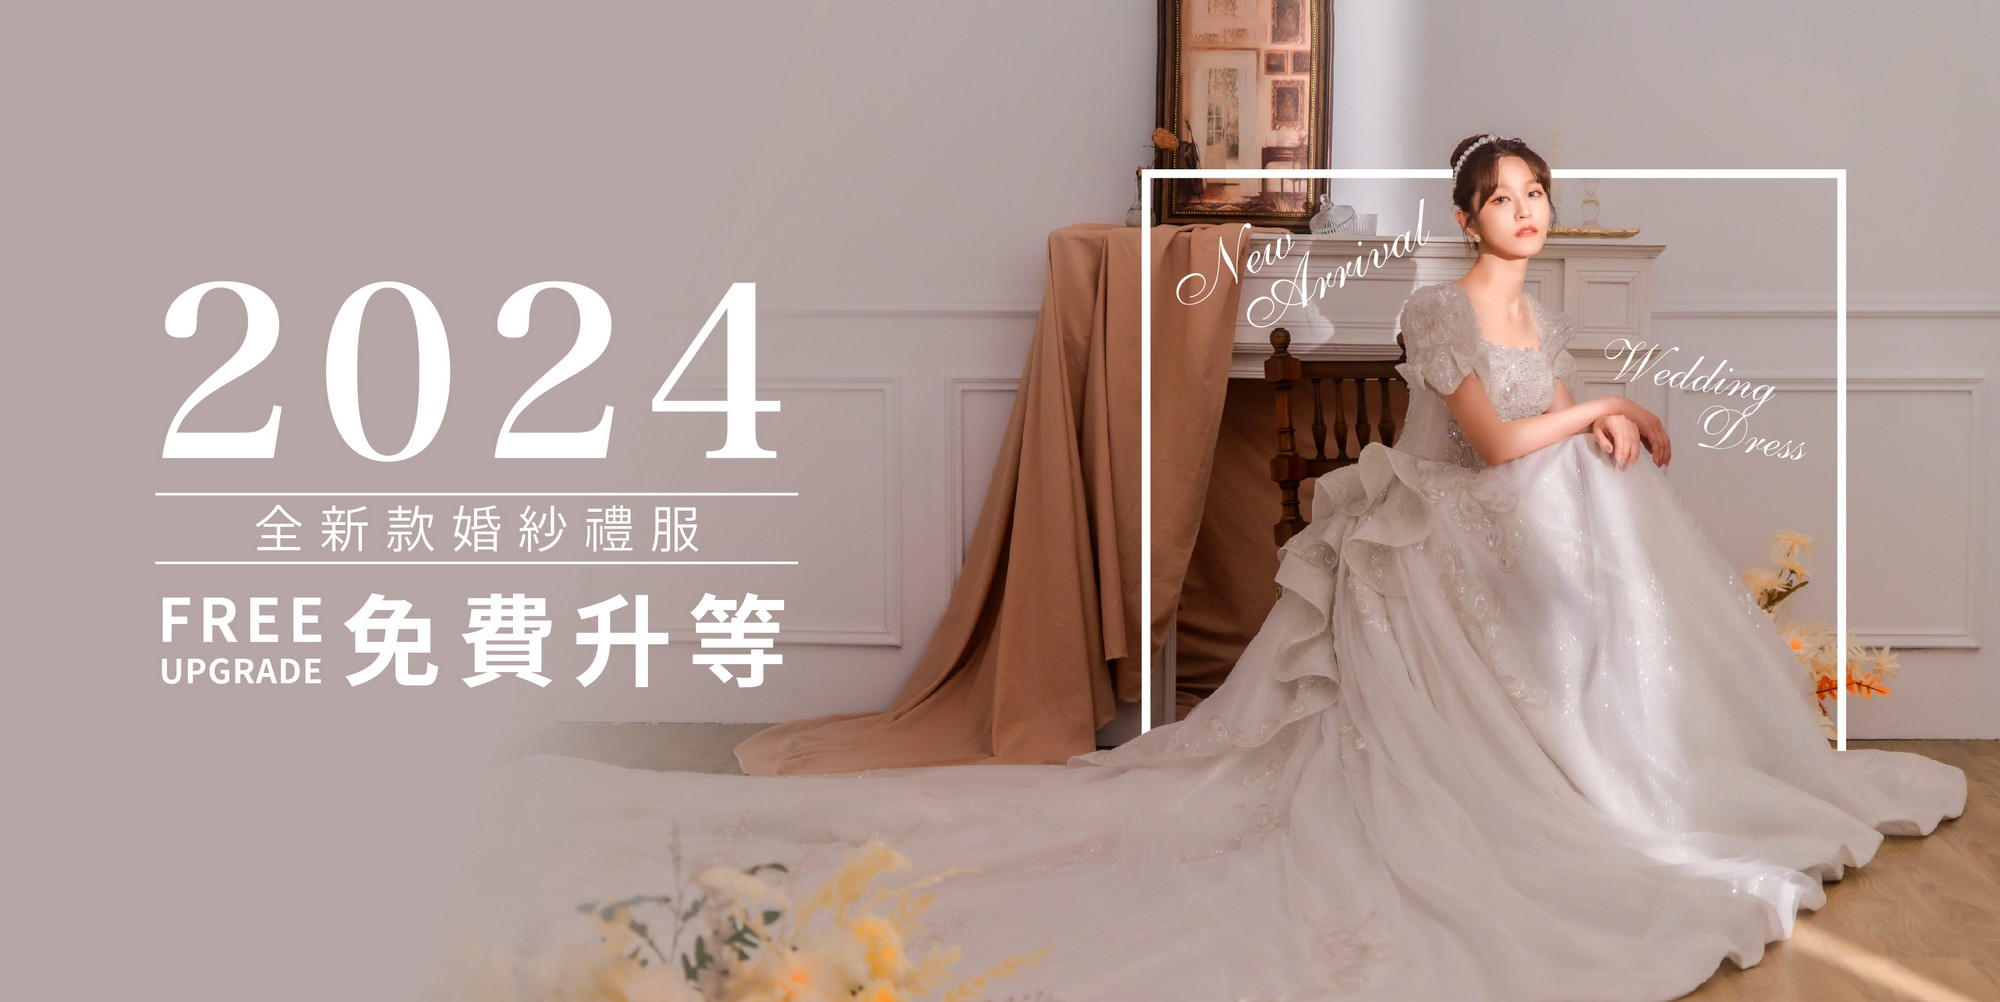 台北 禮服推薦,婚紗推薦 台北, 台北 婚紗價格,台北 婚紗工作室